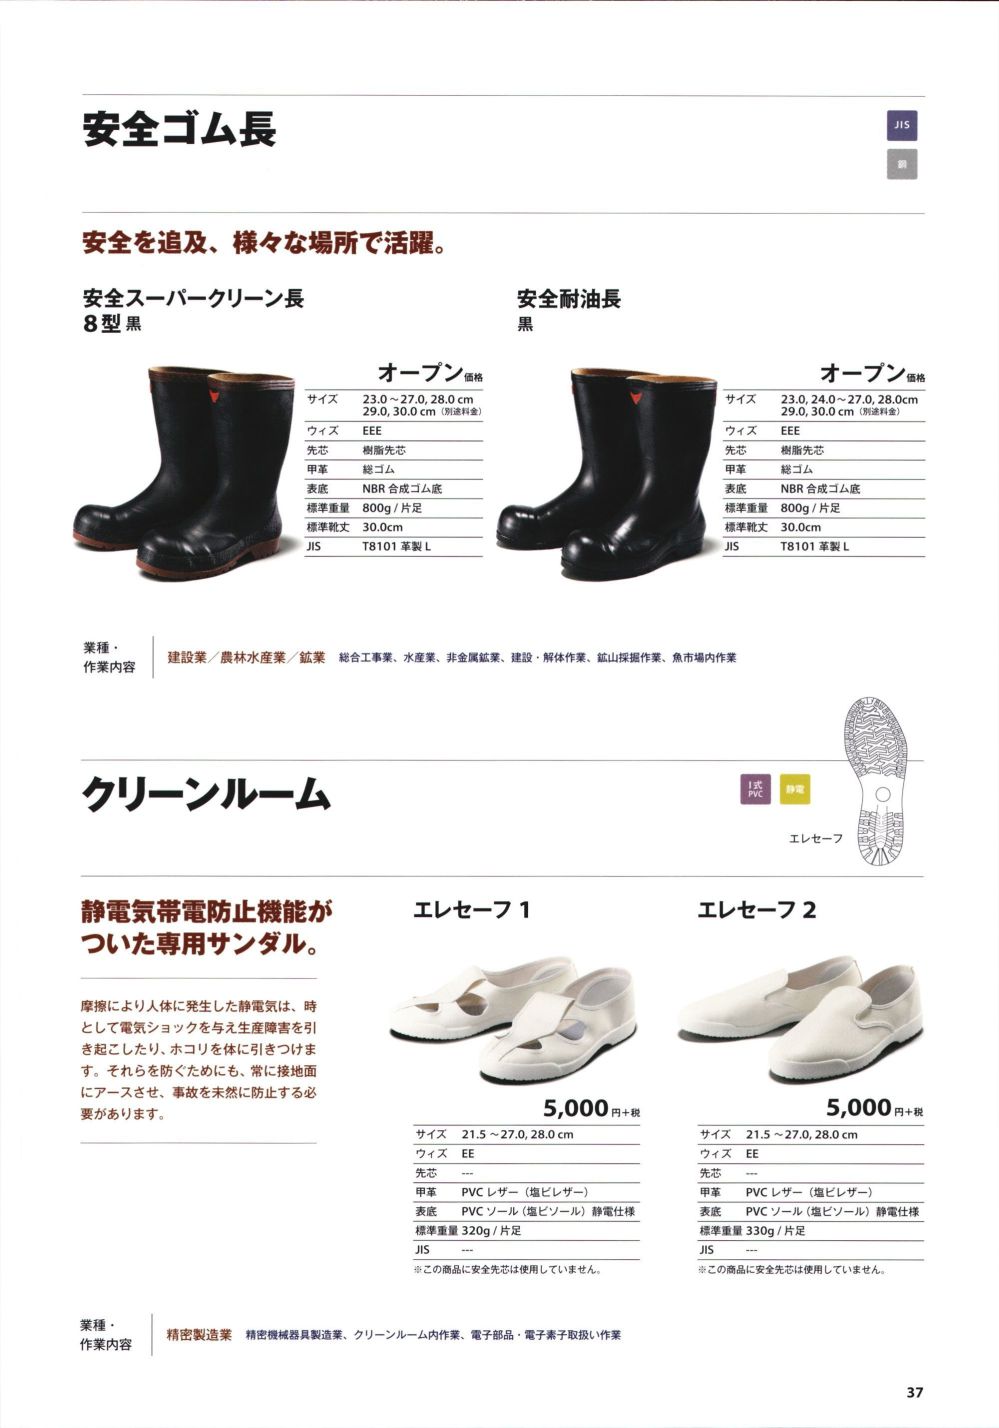 ユニフォーム1.COM 食品白衣jp 厨房・調理・売店用白衣 青木安全靴2019